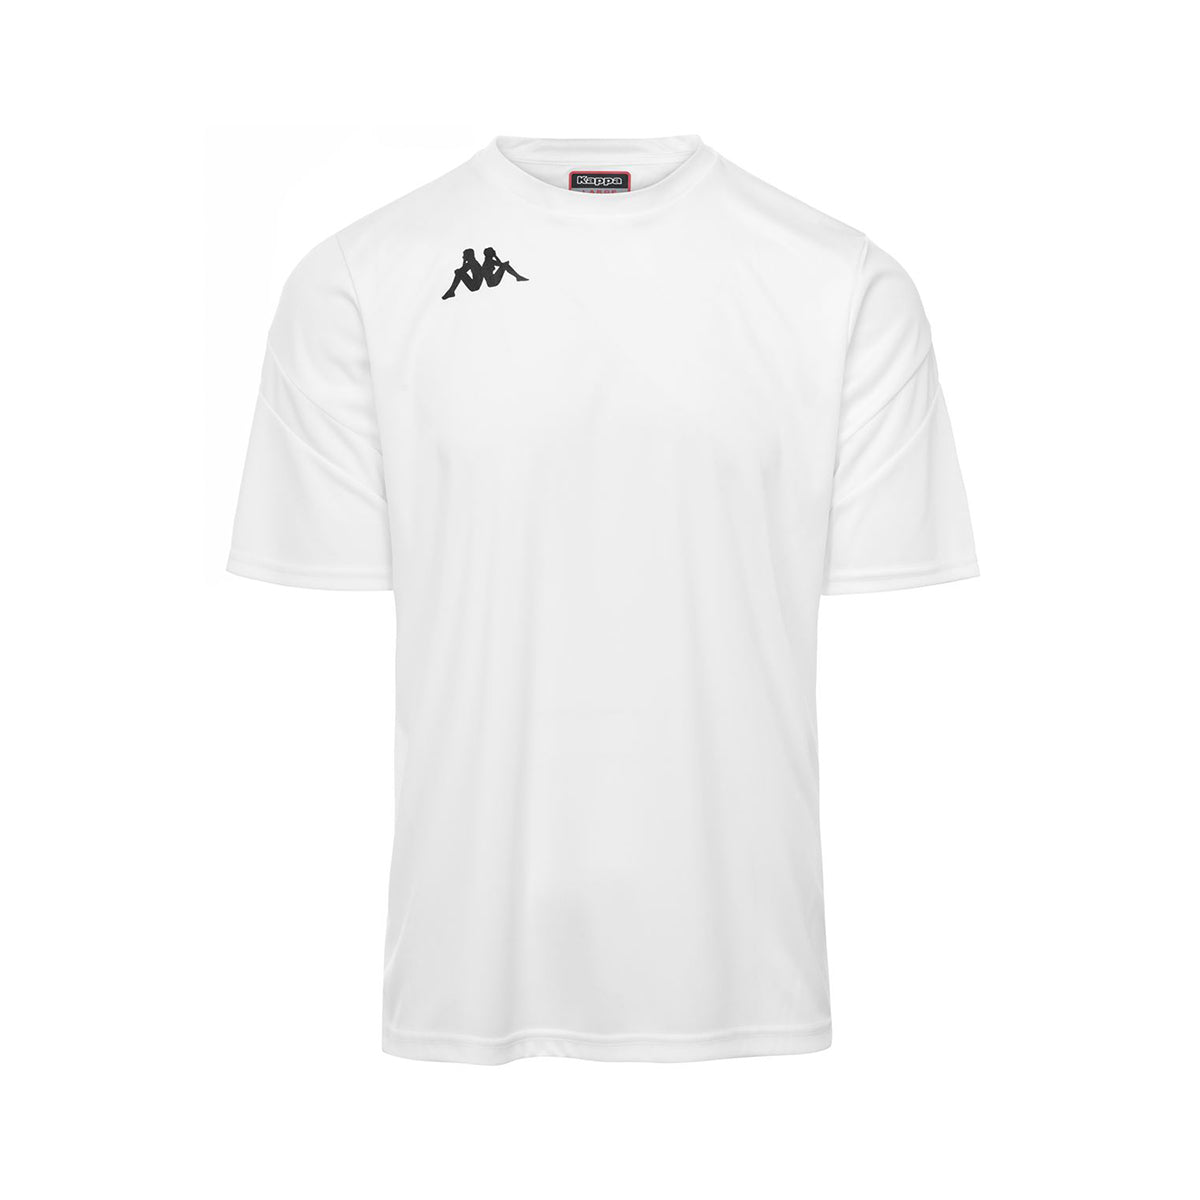 Camiseta de juego Dovo Blanco Hombre - imagen 1